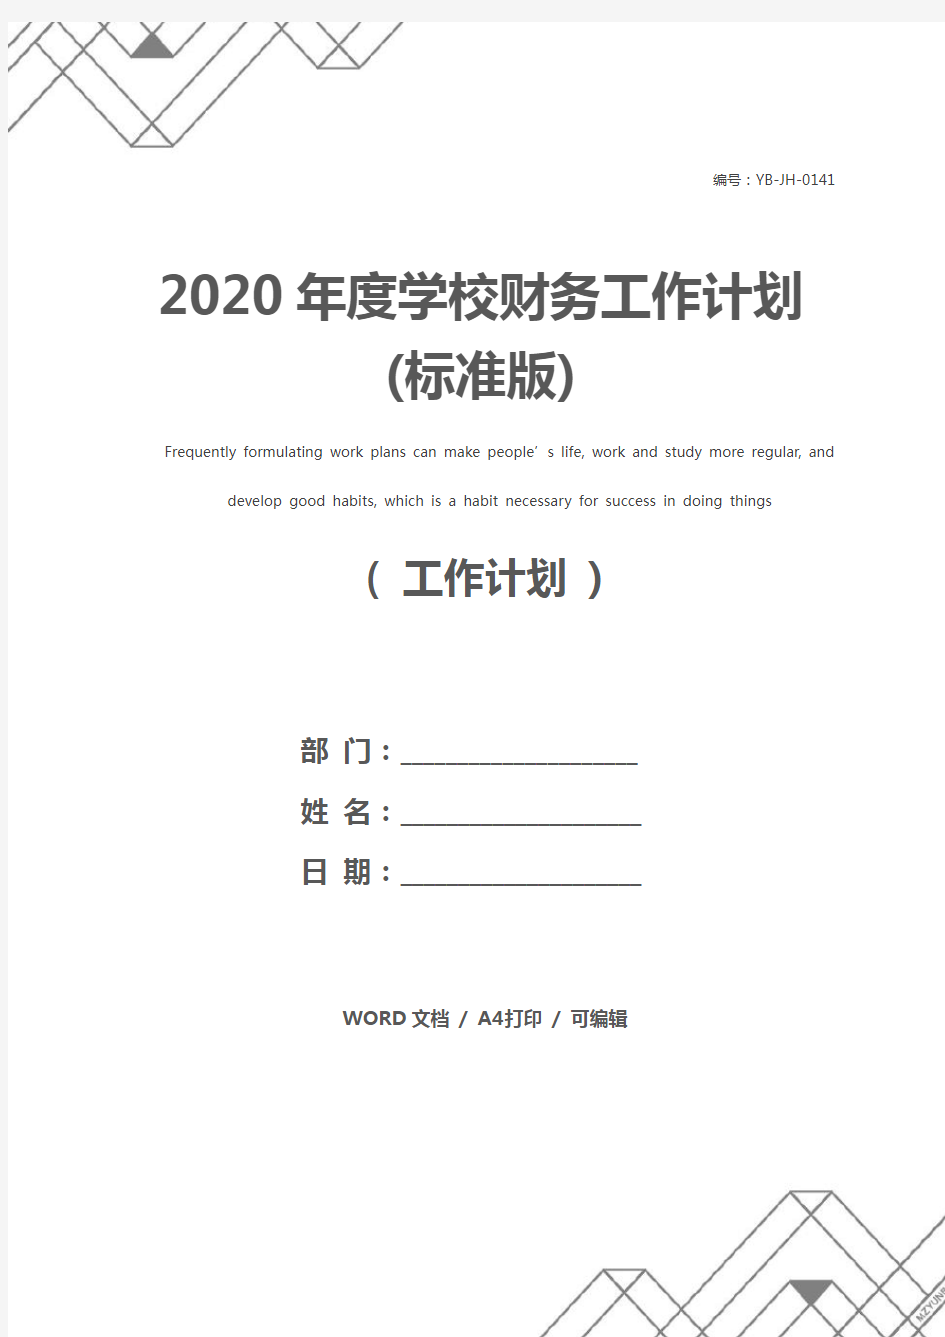 2020年度学校财务工作计划(标准版)